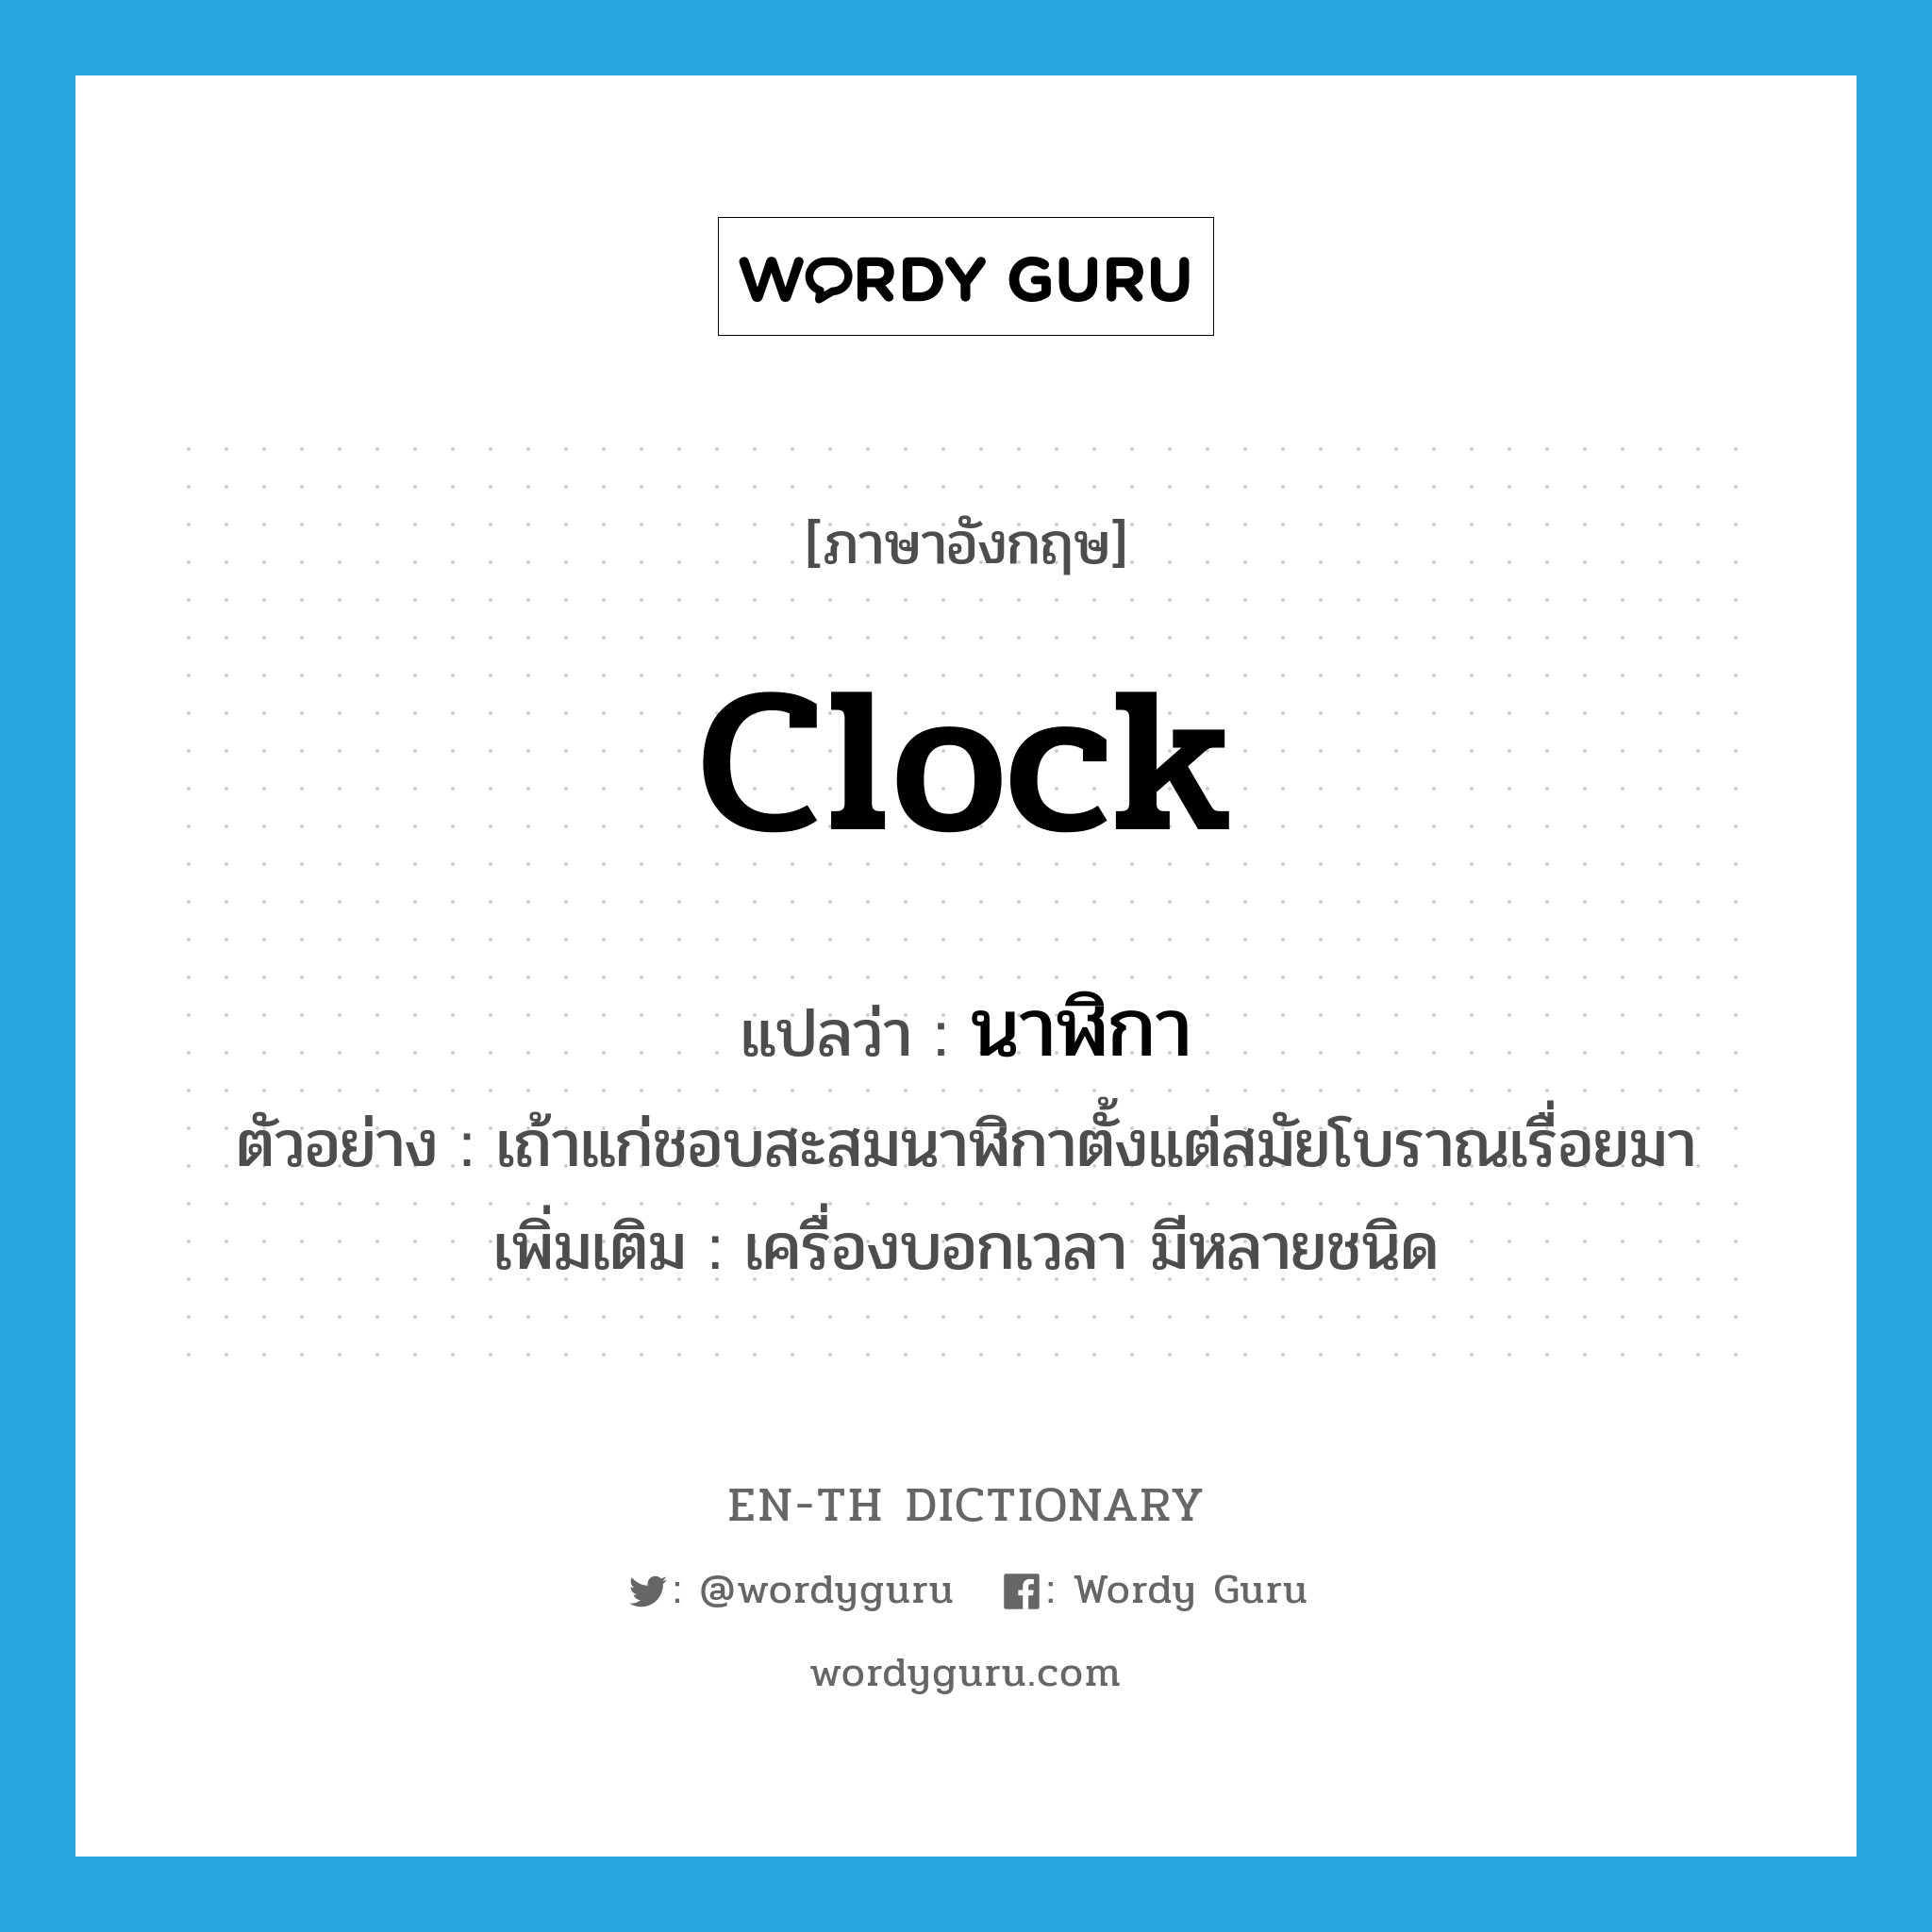 นาฬิกา ภาษาอังกฤษ?, คำศัพท์ภาษาอังกฤษ นาฬิกา แปลว่า clock ประเภท N ตัวอย่าง เถ้าแก่ชอบสะสมนาฬิกาตั้งแต่สมัยโบราณเรื่อยมา เพิ่มเติม เครื่องบอกเวลา มีหลายชนิด หมวด N